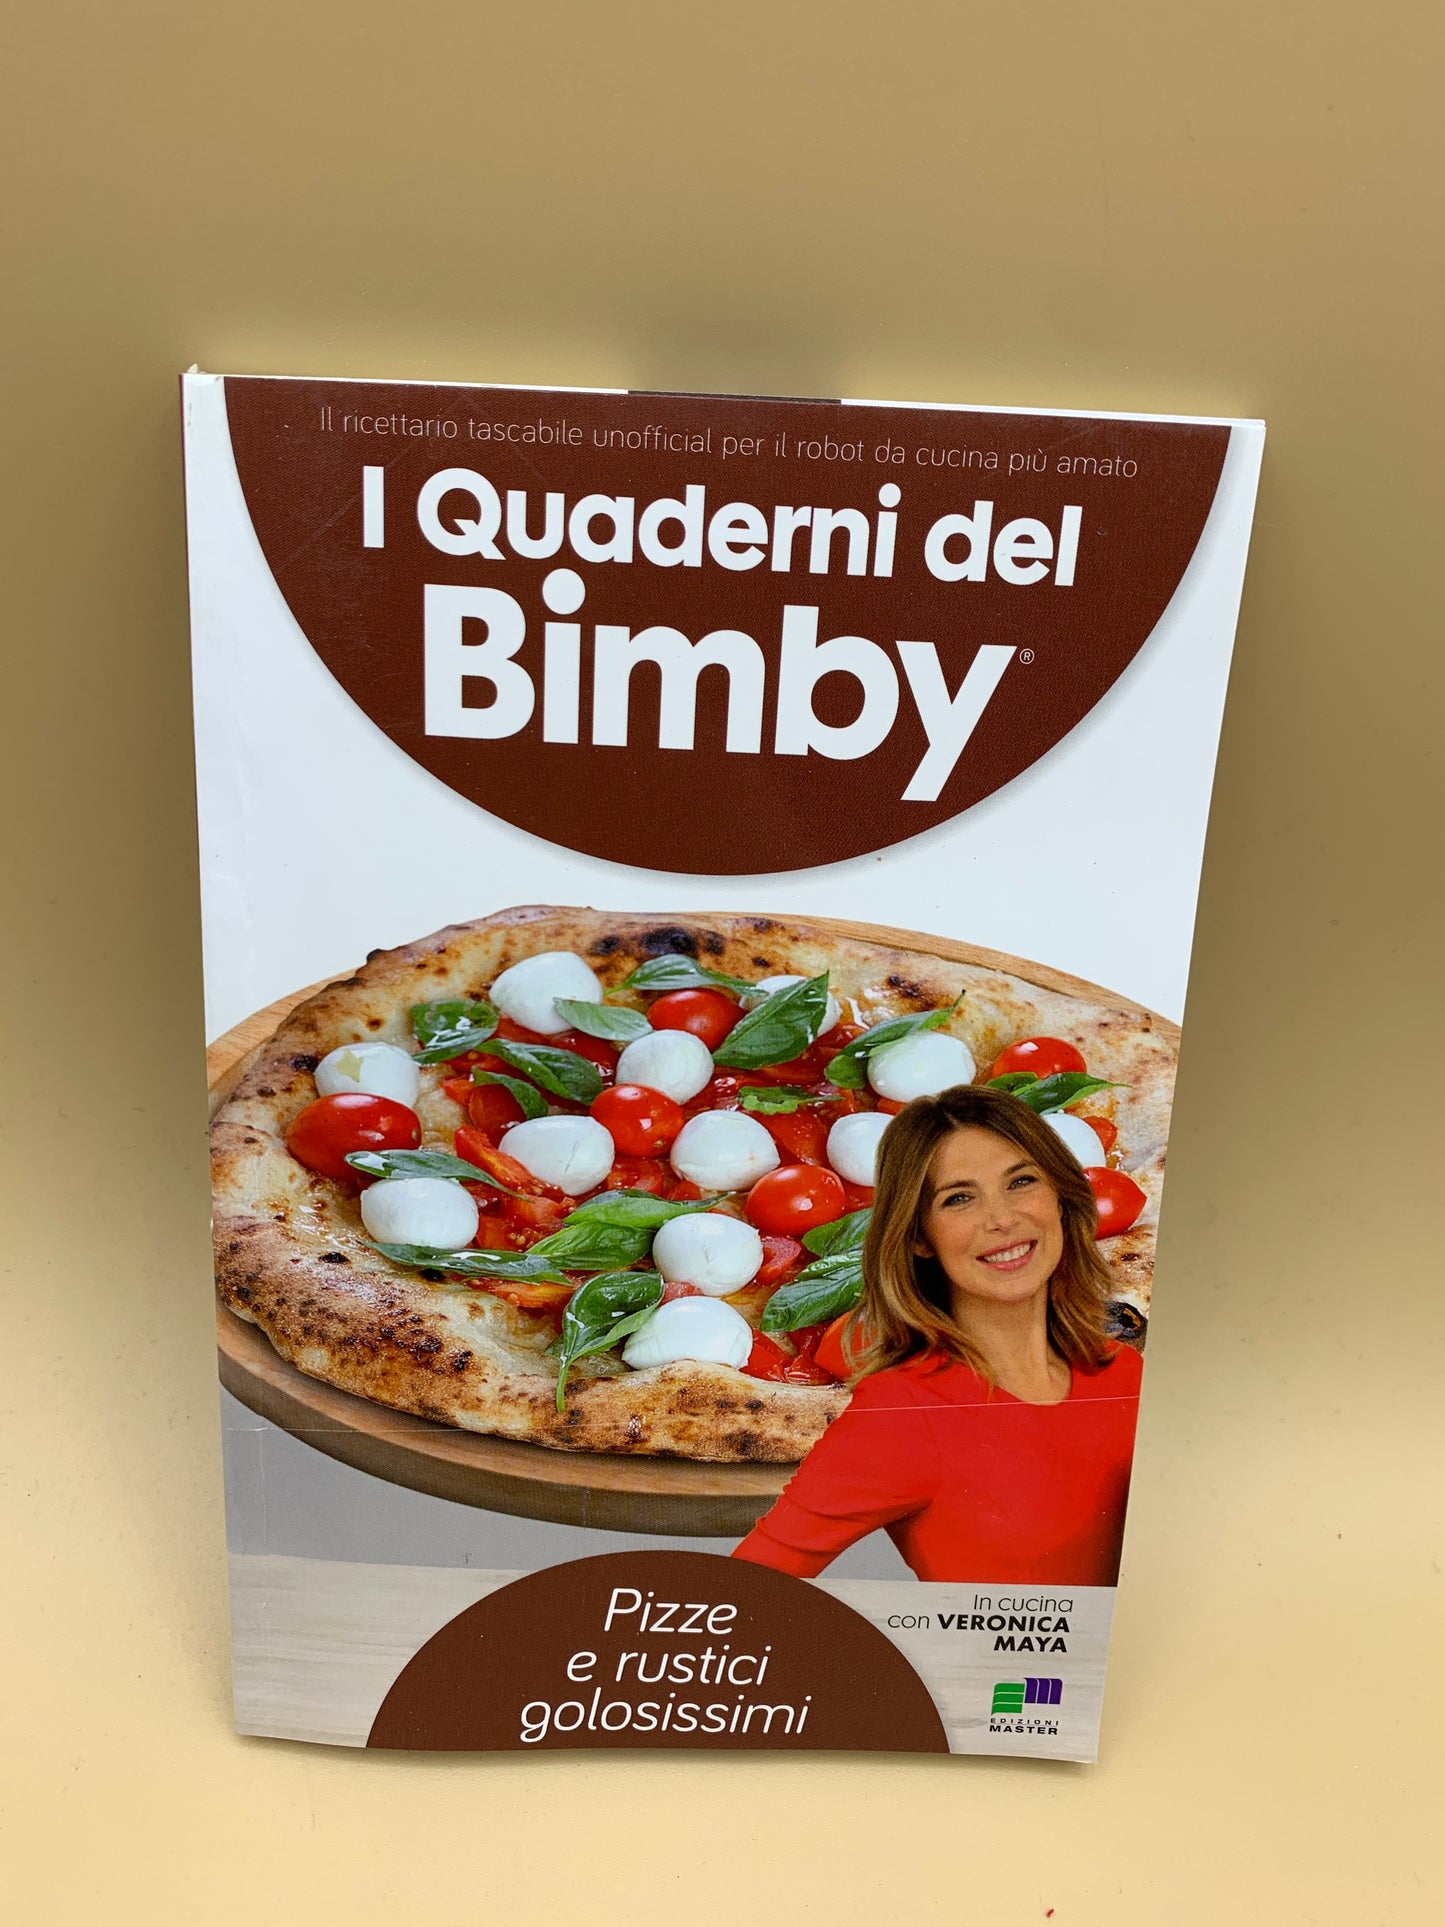 Pizze e rustici golosissimi- ricette Bimby